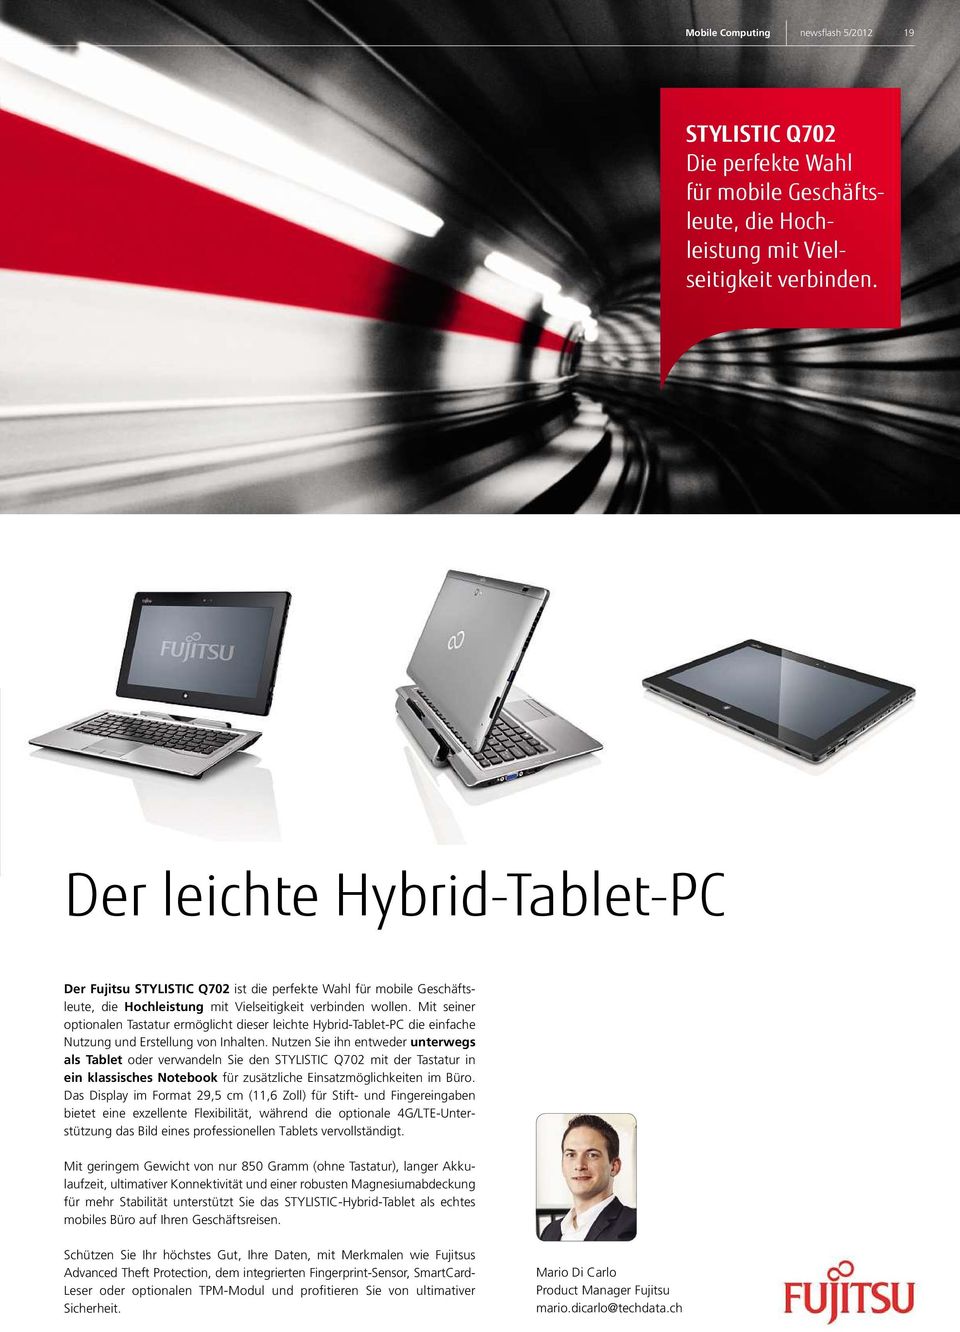 Mit seiner optionalen Tastatur ermöglicht dieser leichte Hybrid-Tablet-PC die einfache Nutzung und Erstellung von Inhalten.